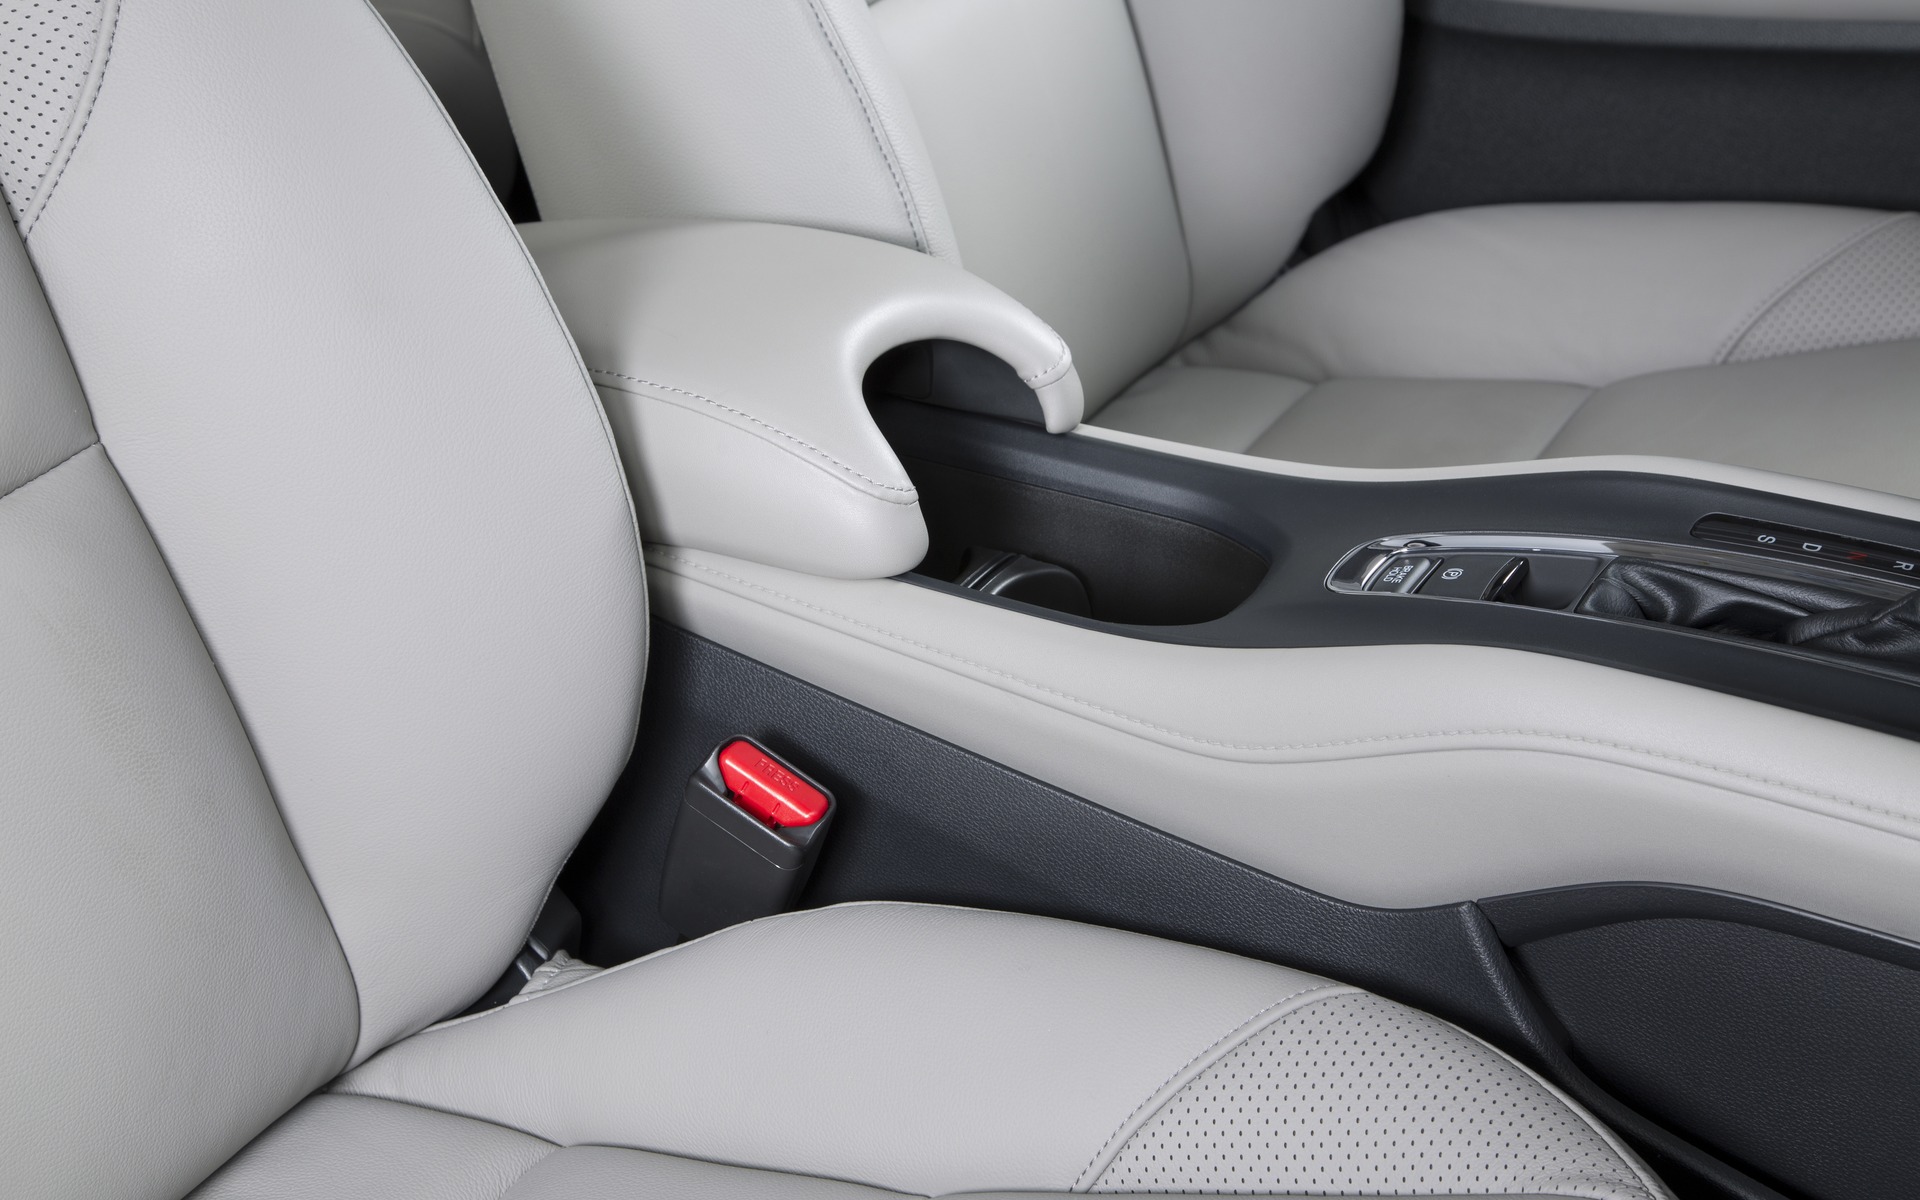 Honda HR-V 2016 - Accoudoir central coulissant et porte-gobelets.